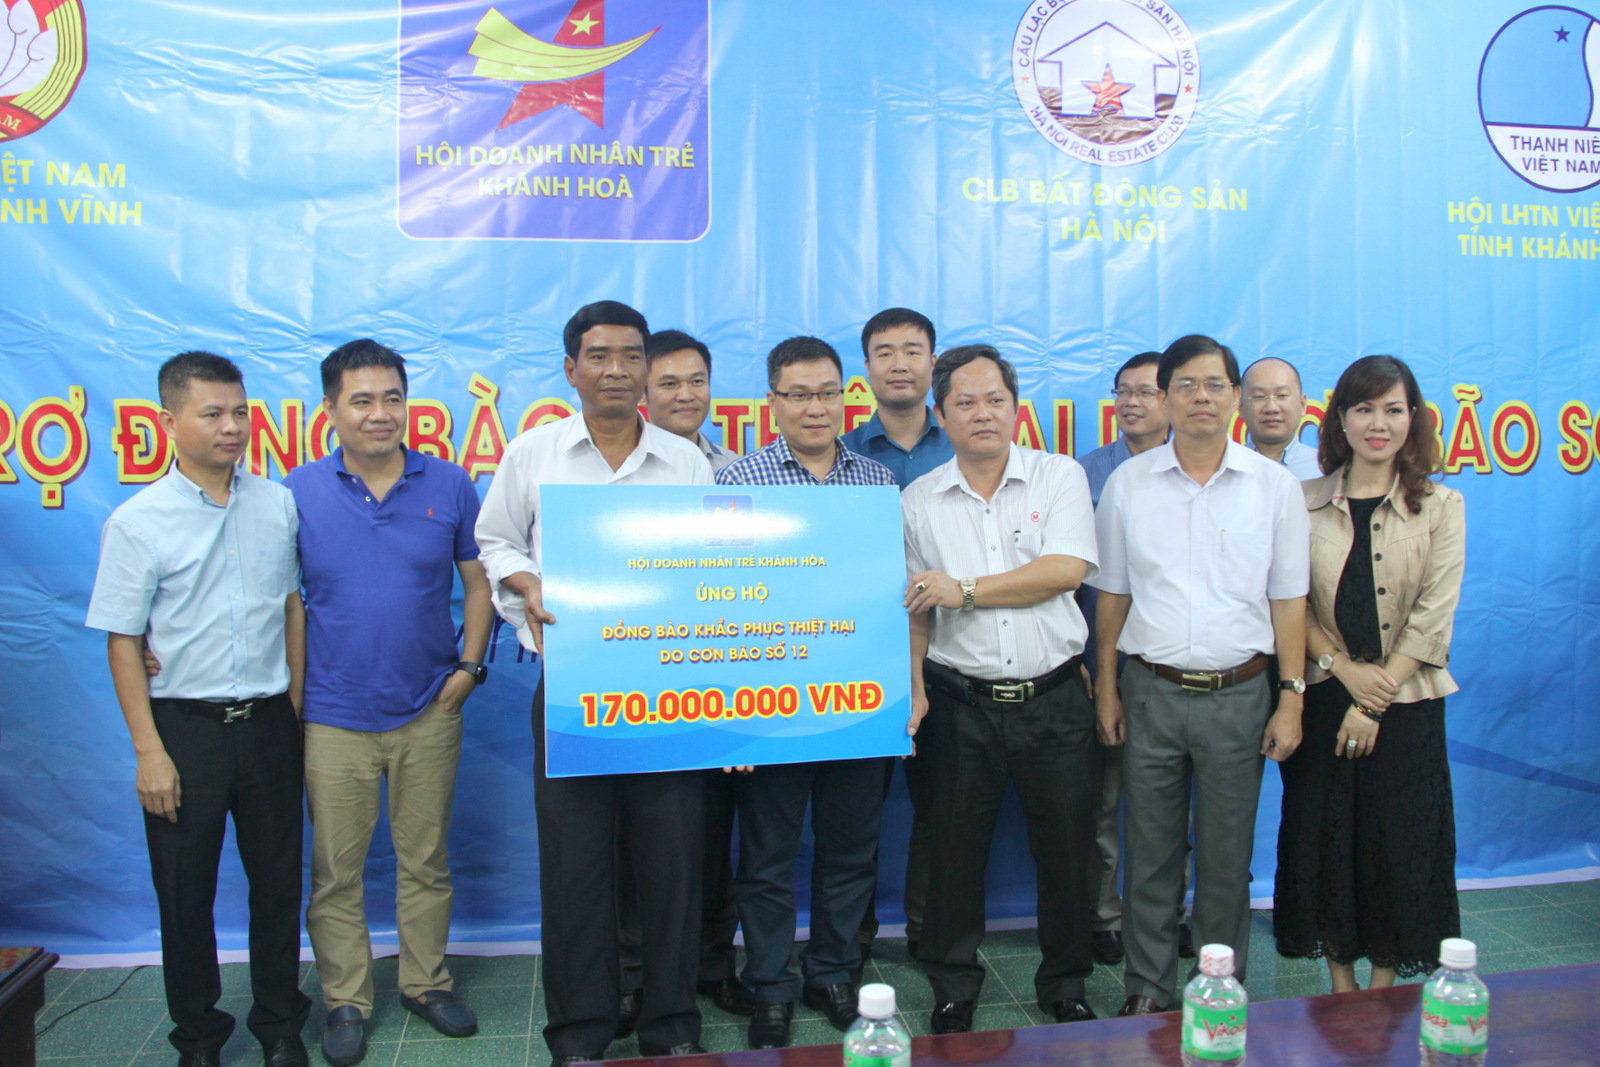  Ông Lương Thế Hùng - Chủ tịch Hội doanh nhân trẻ Khánh Hòa trao 170 triệu đồng hỗ trợ Khánh Vĩnh khắc phục hậu quả bão số 12